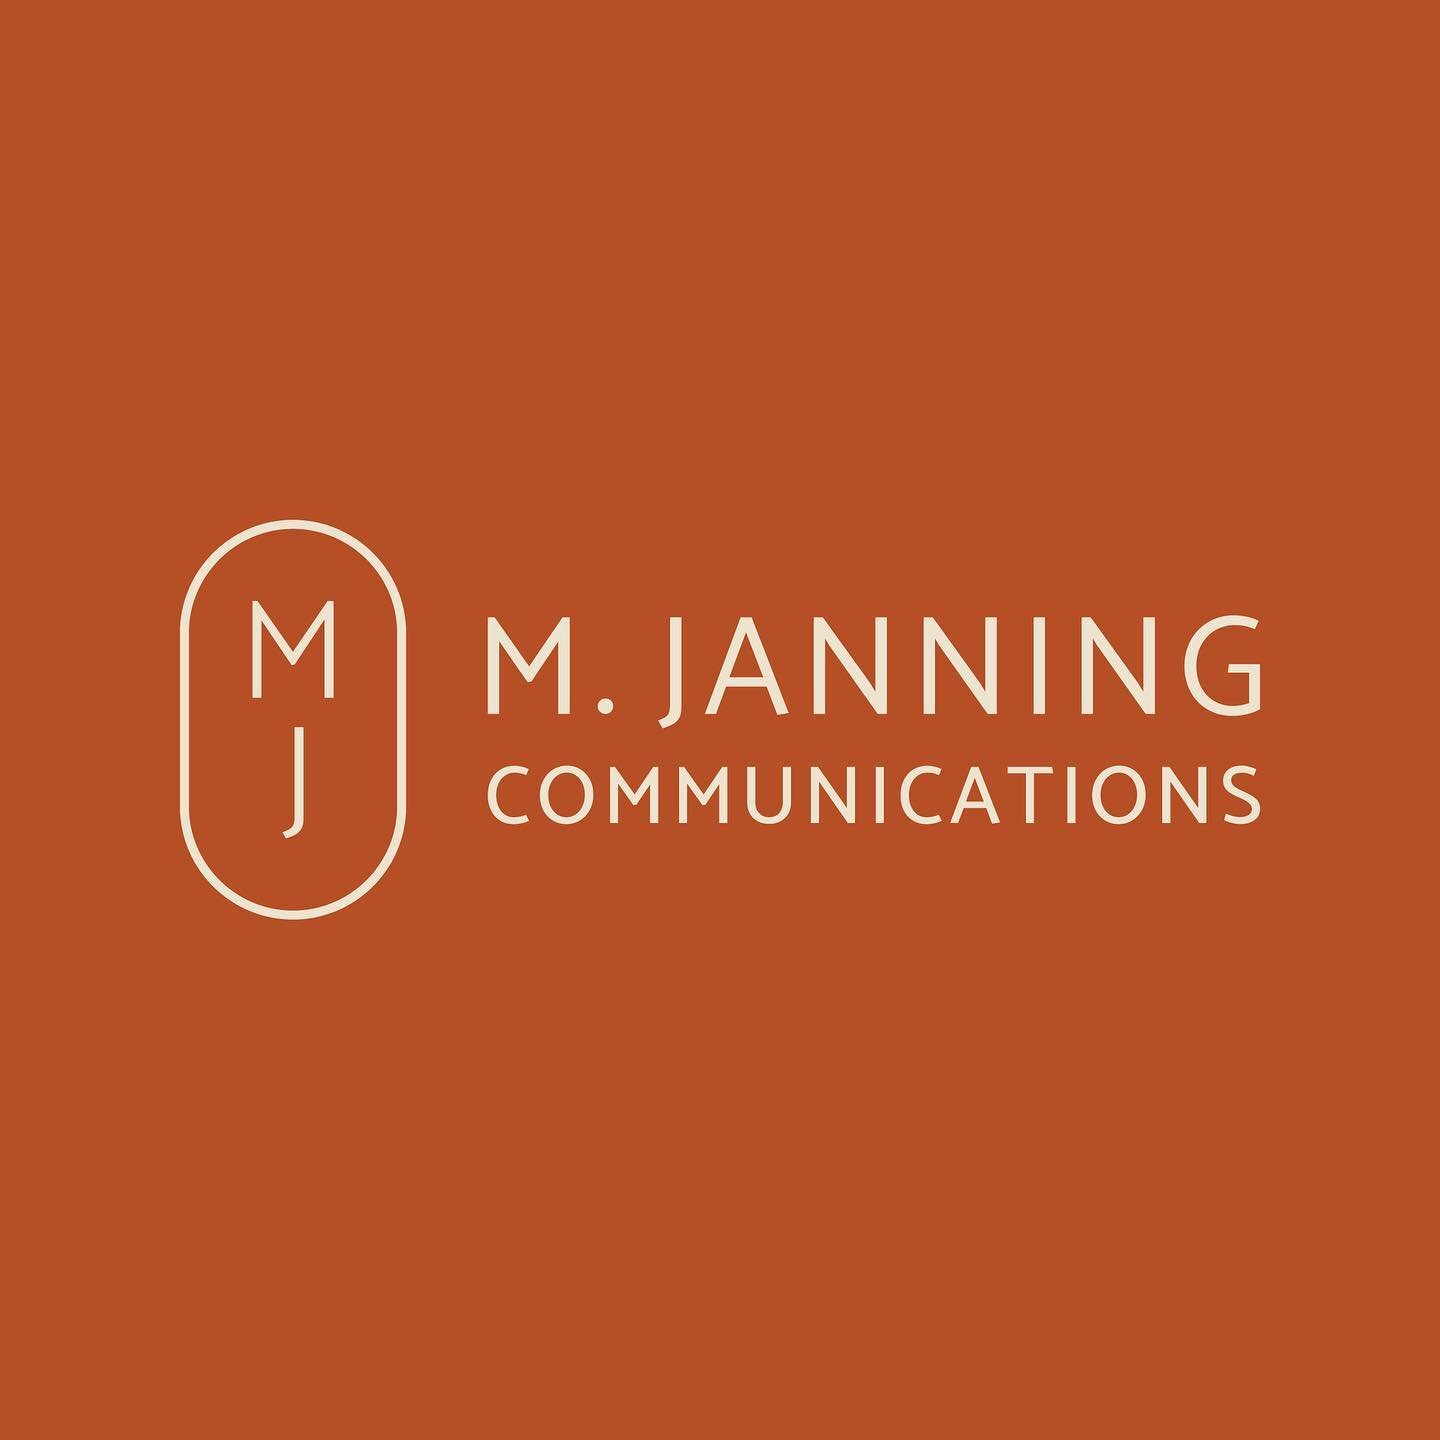 New branding for @mjanningcomms.